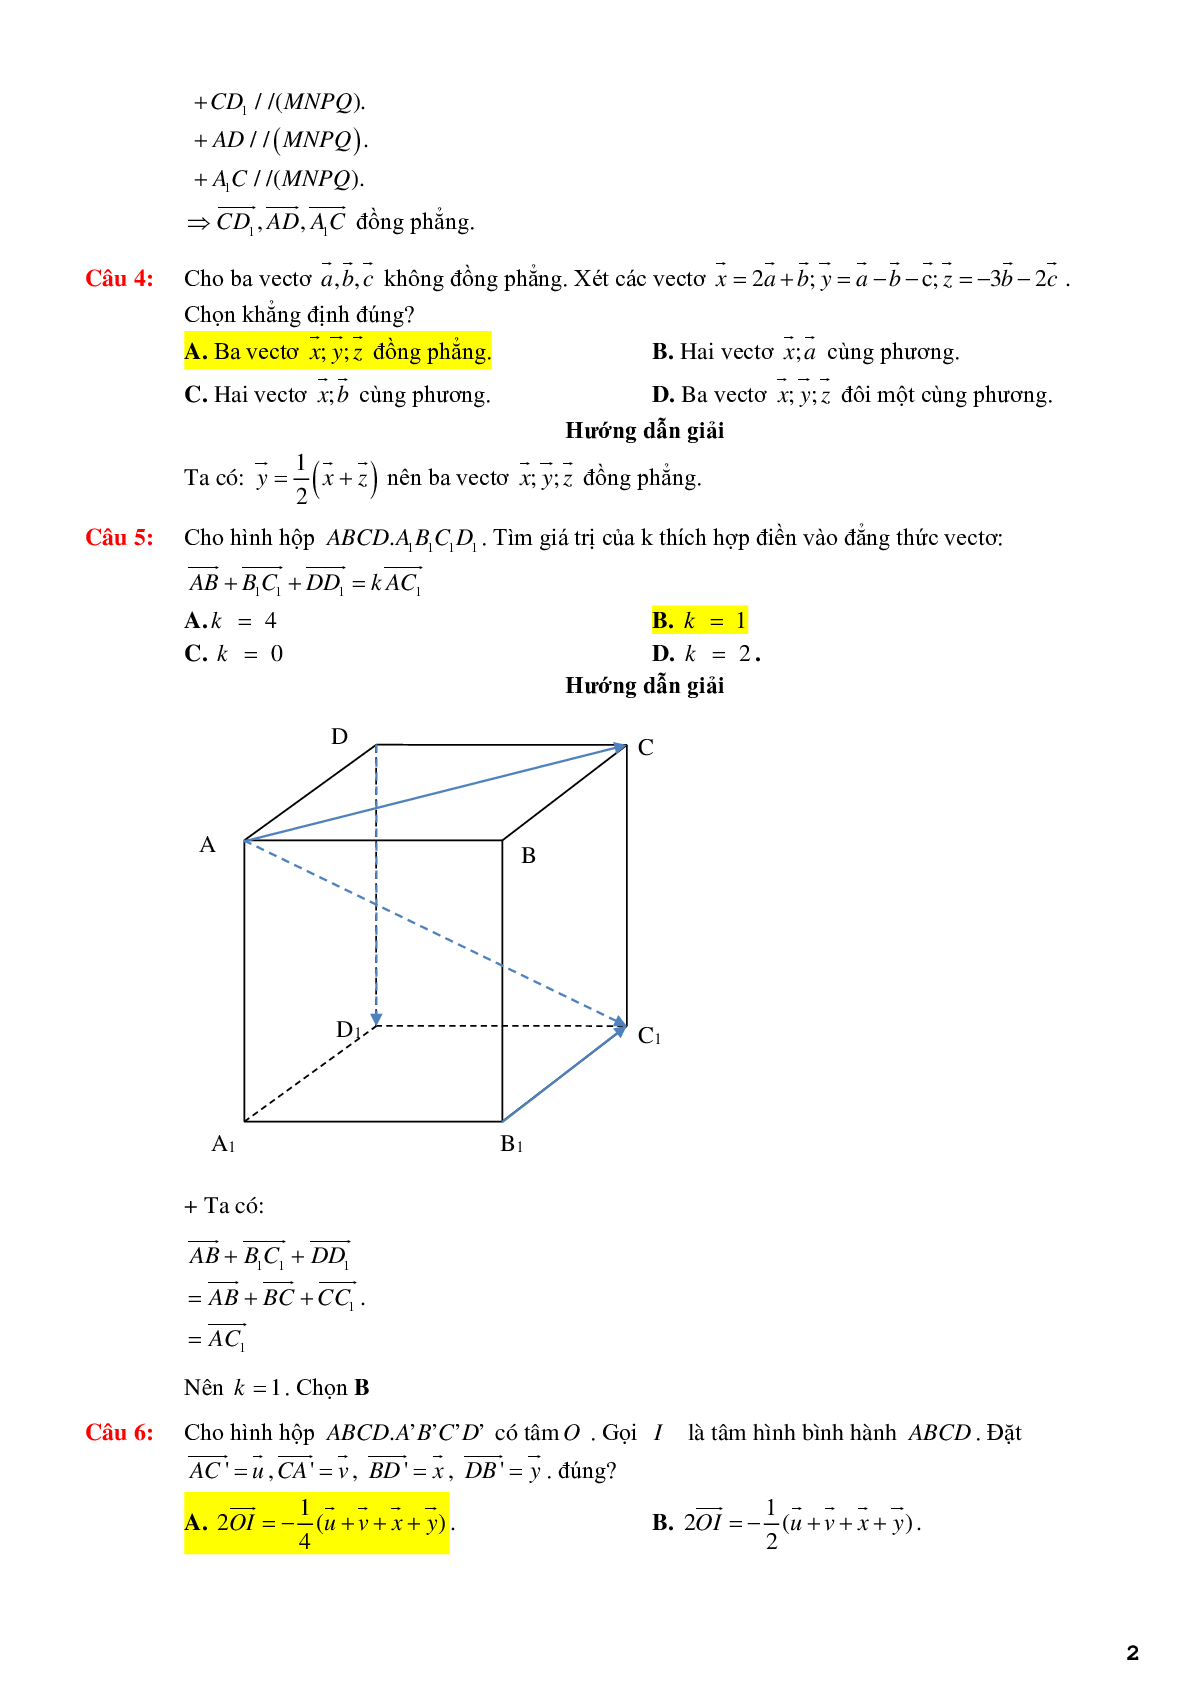 123 bài tập trắc nghiệm quan hệ vuông góc có lời giải chi tiết (trang 2)